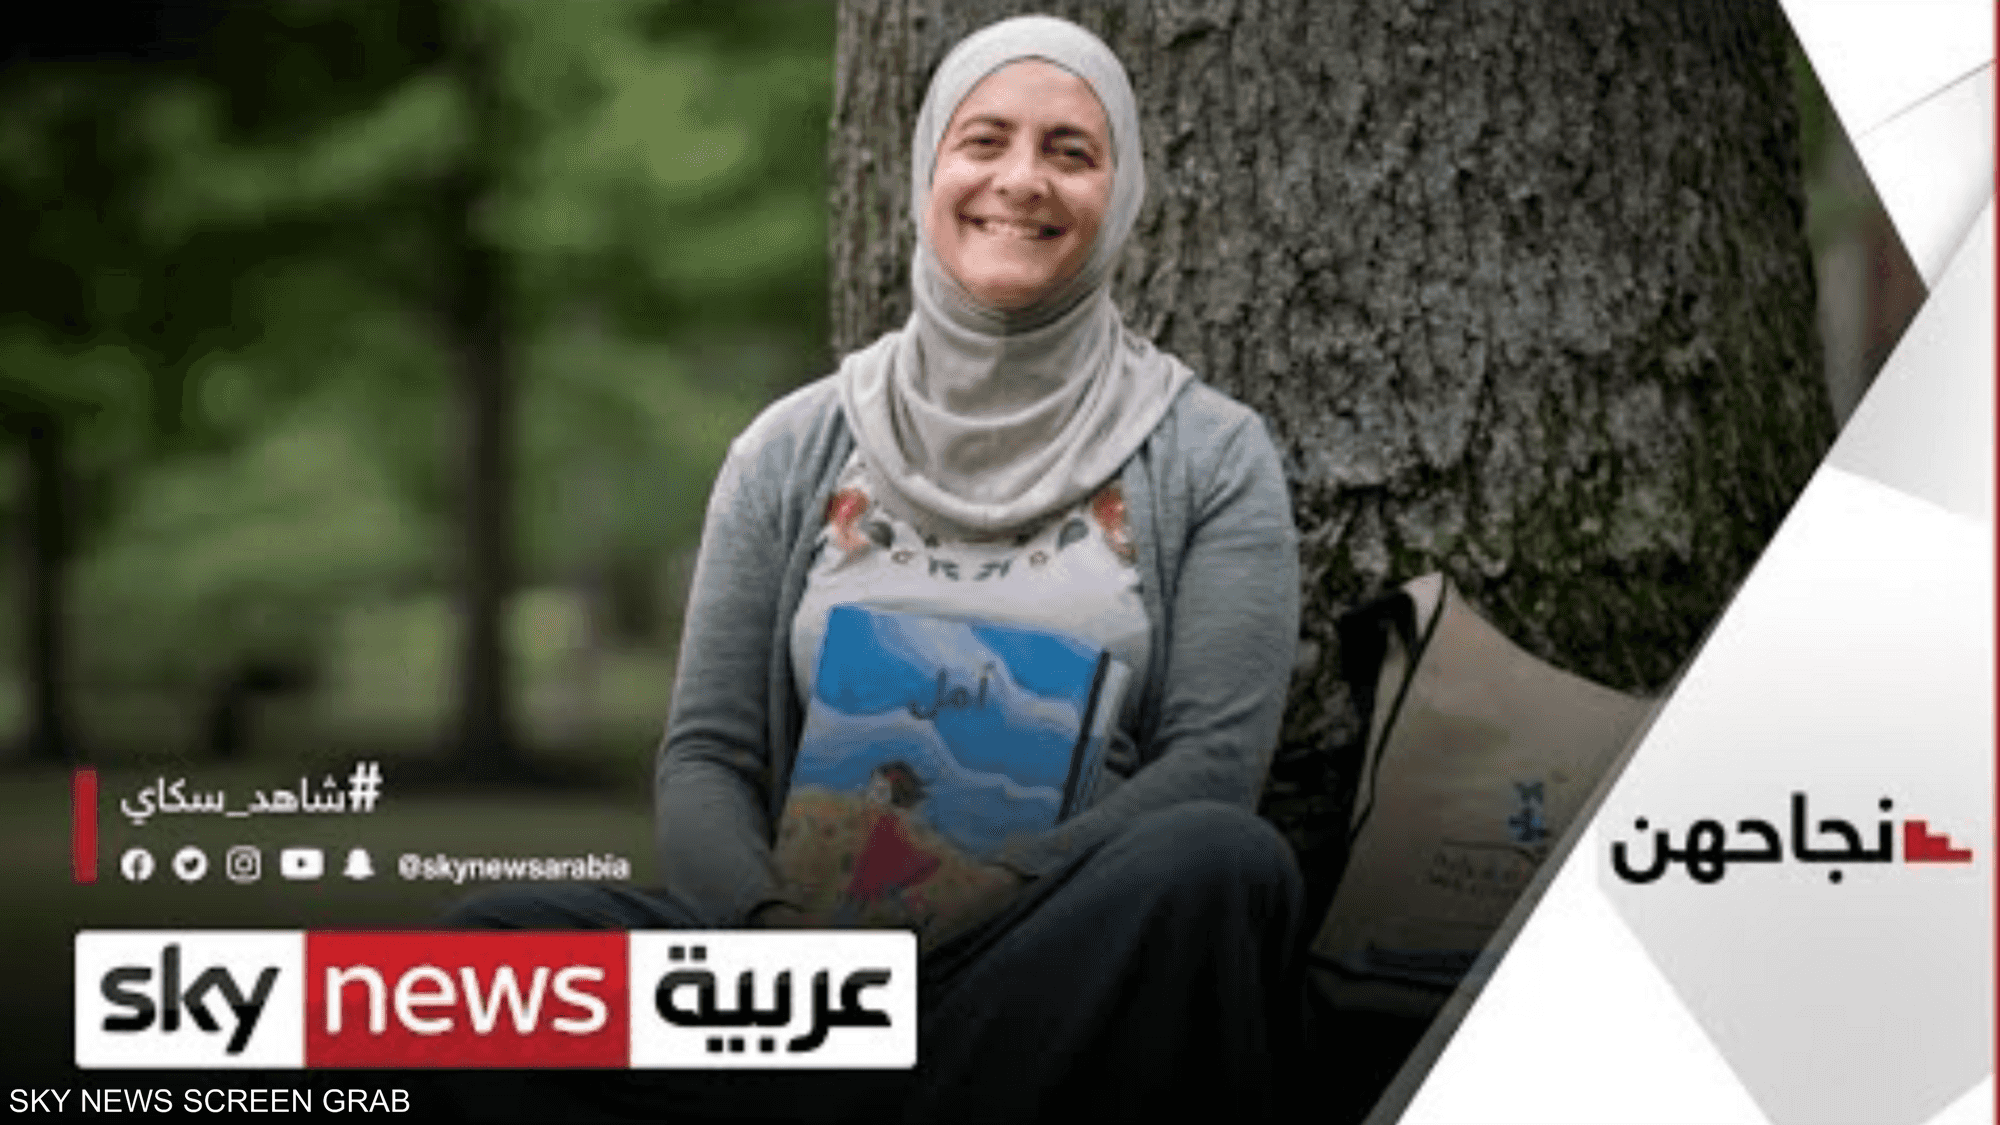 رنا الدجاني.. عالمة أردنية تغرس حب القراءة في الأطفال